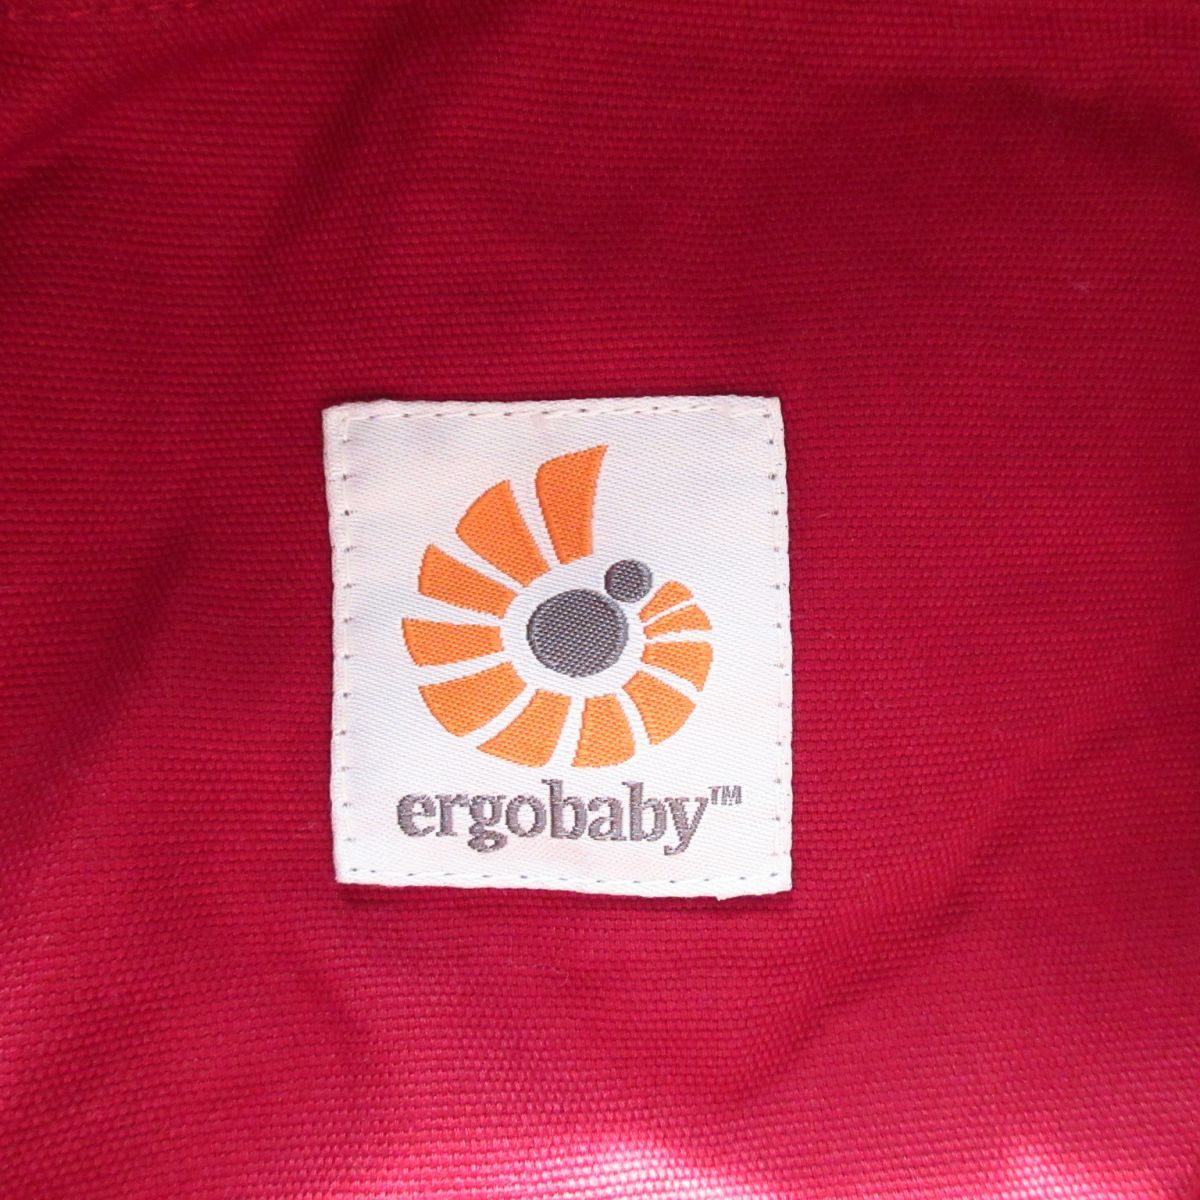 美品 Ergobaby エルゴベビー Original RED BCARDRD 3ポジション ベビーキャリア 抱っこ紐 おんぶ紐 赤 レッド 013_画像7